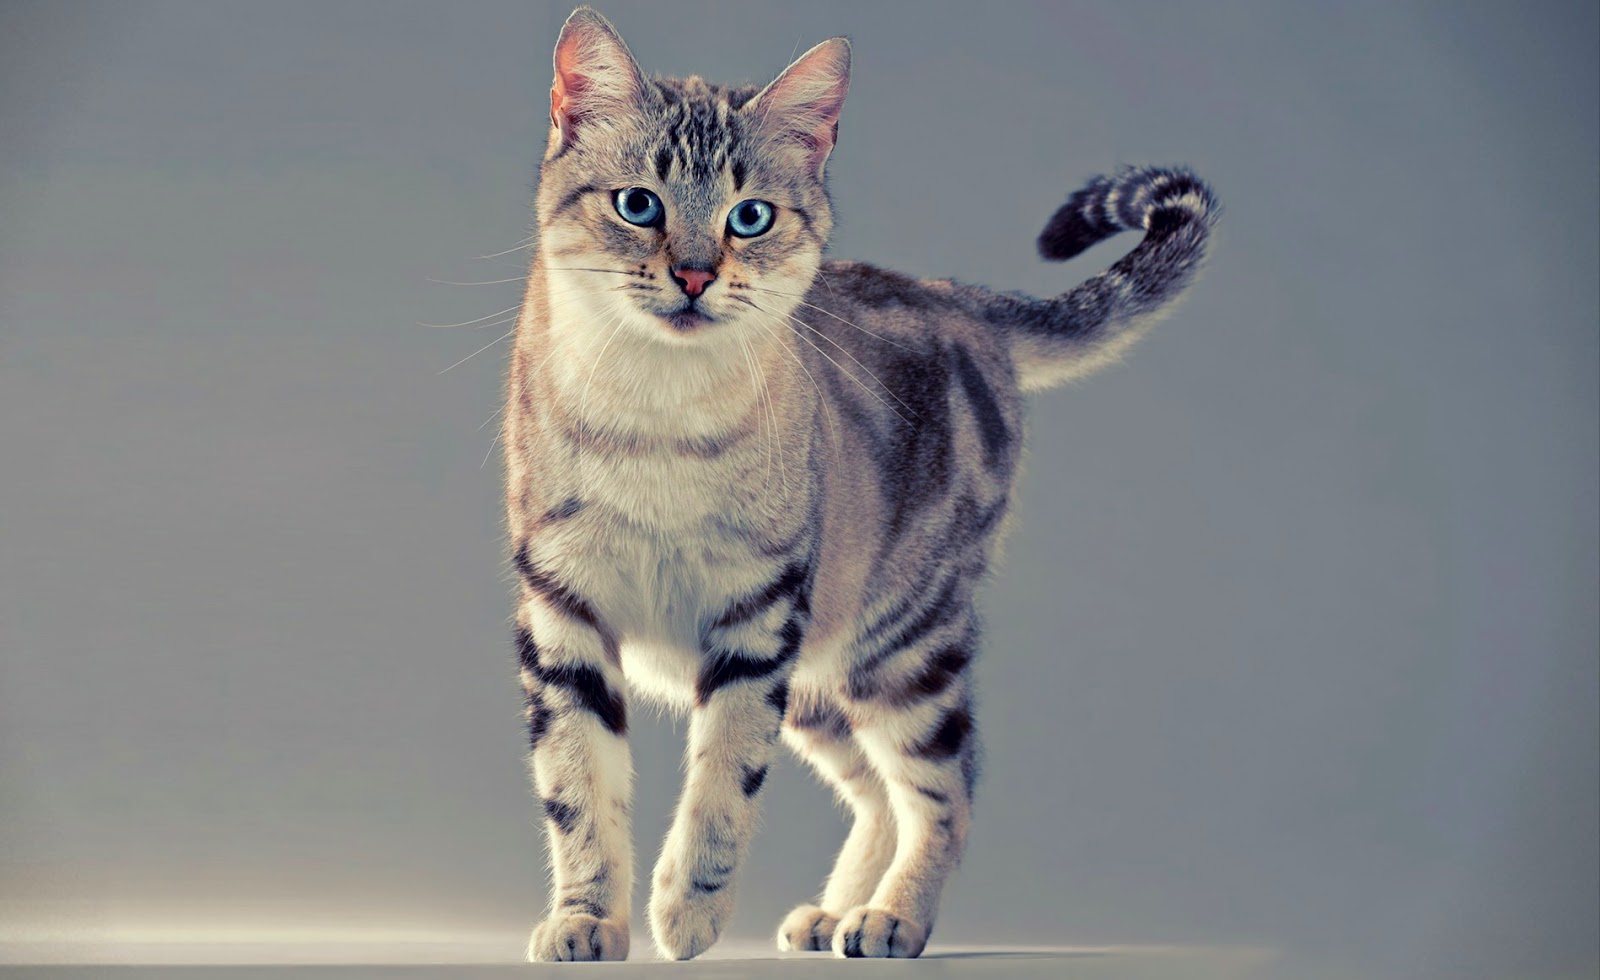  Gambar  Kucing  Imut  dan Lucu Kumpulan Gambar 